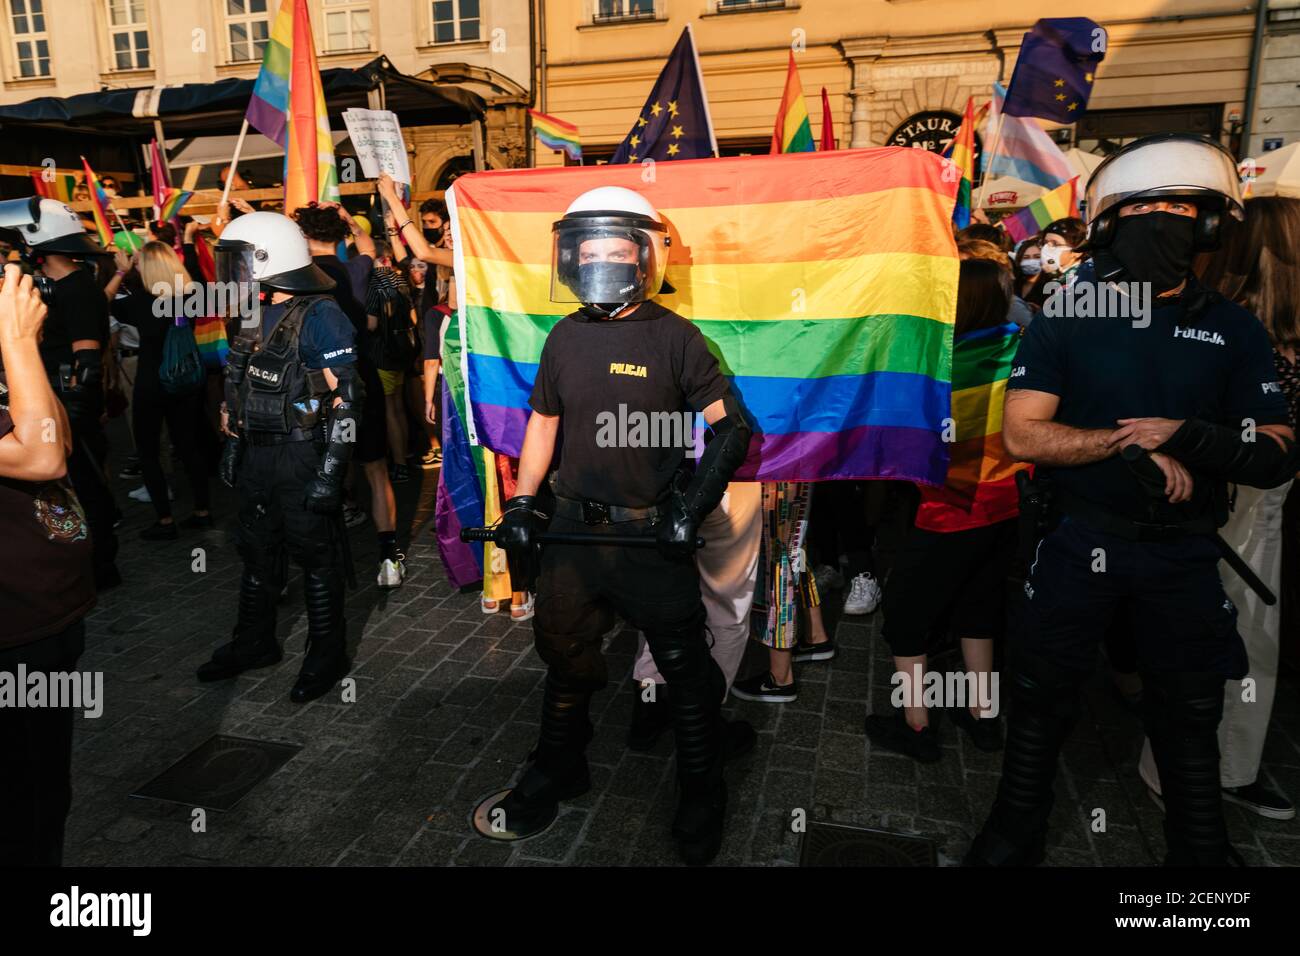 Un poliziotto delle unità di prevenzione si trova di fronte a una bandiera di orgoglio LGBTQ di colore arcobaleno durante il marzo.la marcia annuale di uguaglianza, conosciuta anche come Pride Parade, ha attratto un numero particolarmente grande di partecipanti, così come due contromunzioni. In Polonia, recentemente si è svolto un acceso dibattito pubblico tra sostenitori della tolleranza, con una visione di centro o di sinistra, e circoli conservatori, nazionalisti e cattolici di destra, che stanno esprimendo la loro avversione alla comunità LGBT in modo sempre più spietato. Gli oppositori della comunità LGBT lo accusano di cercare di portare avanti una morale Foto Stock